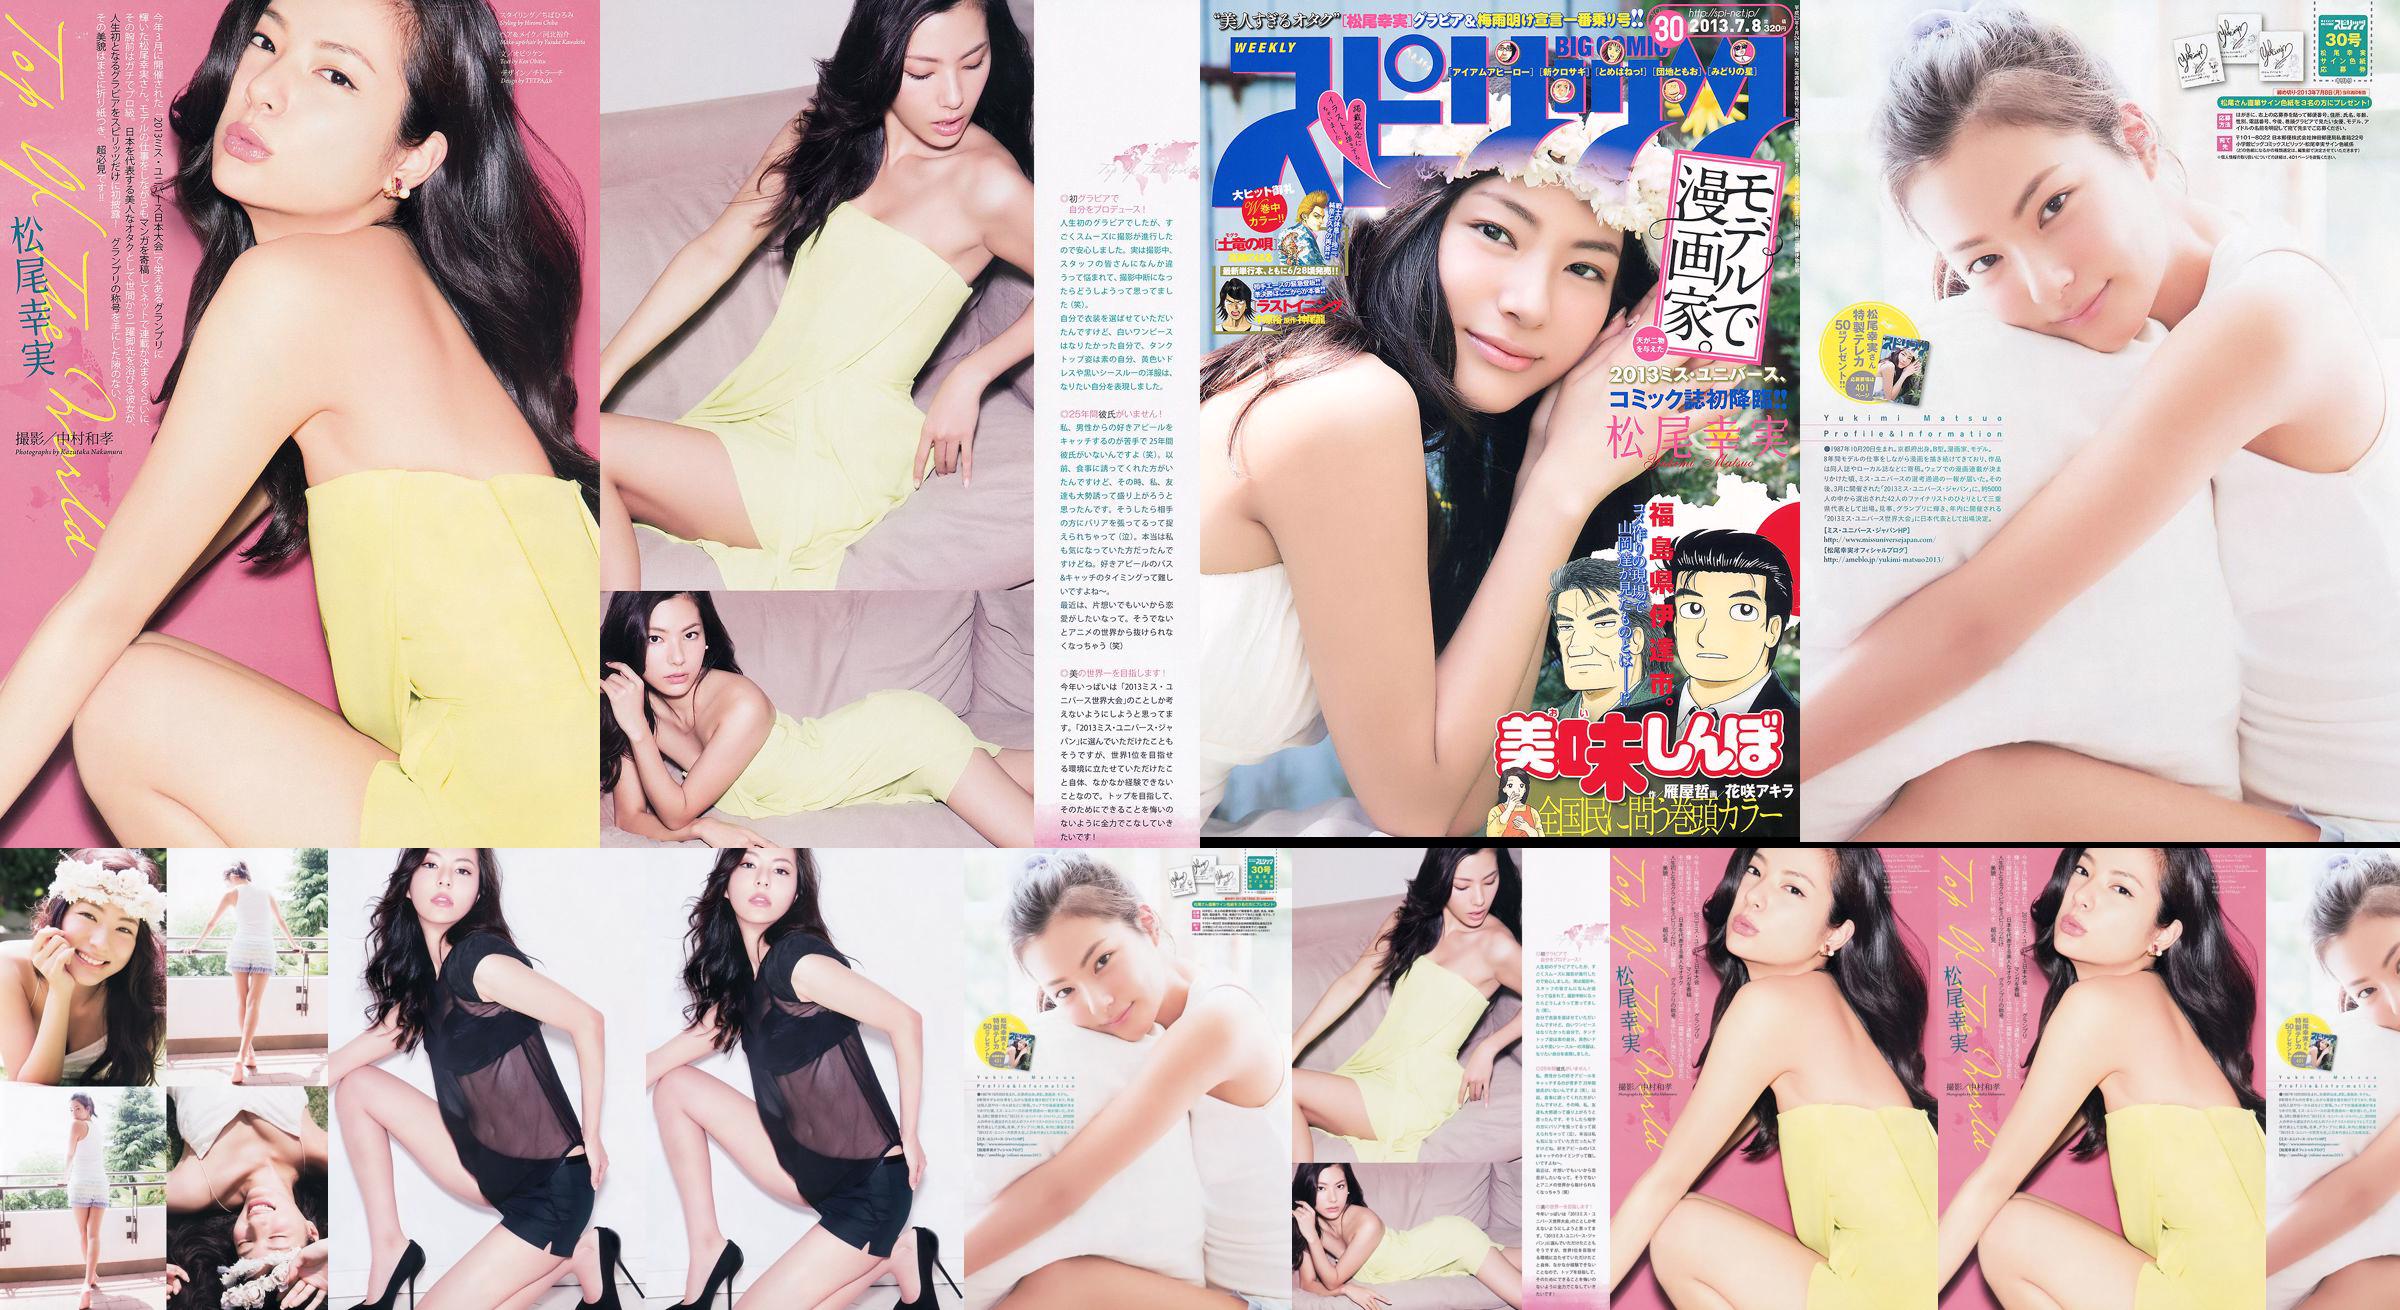 [Weekly Big Comic Spirits] Komi Matsuo 2013 No.30 Photo Magazine No.455974 Pagina 3